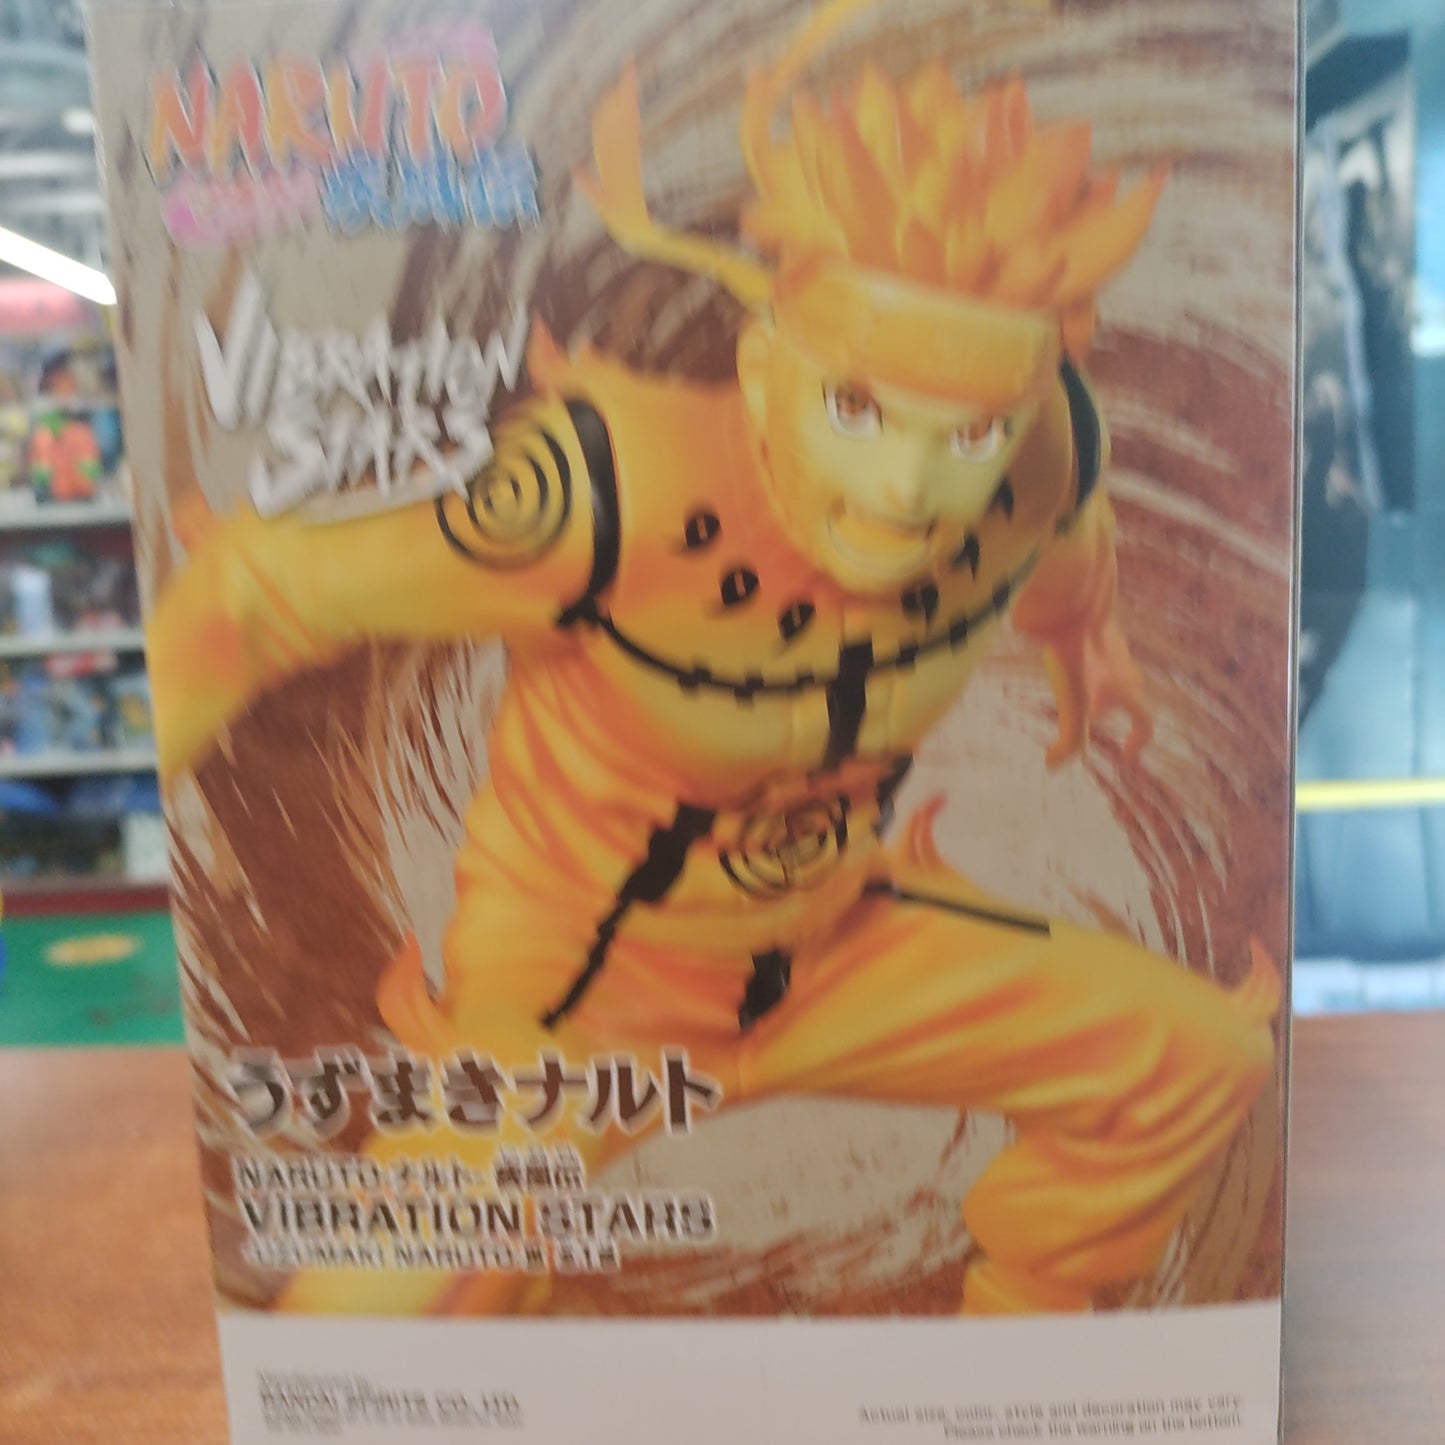 Naruto Shippuden Vibration Star Kyuubi Mode Naruto Uzumaki Figure